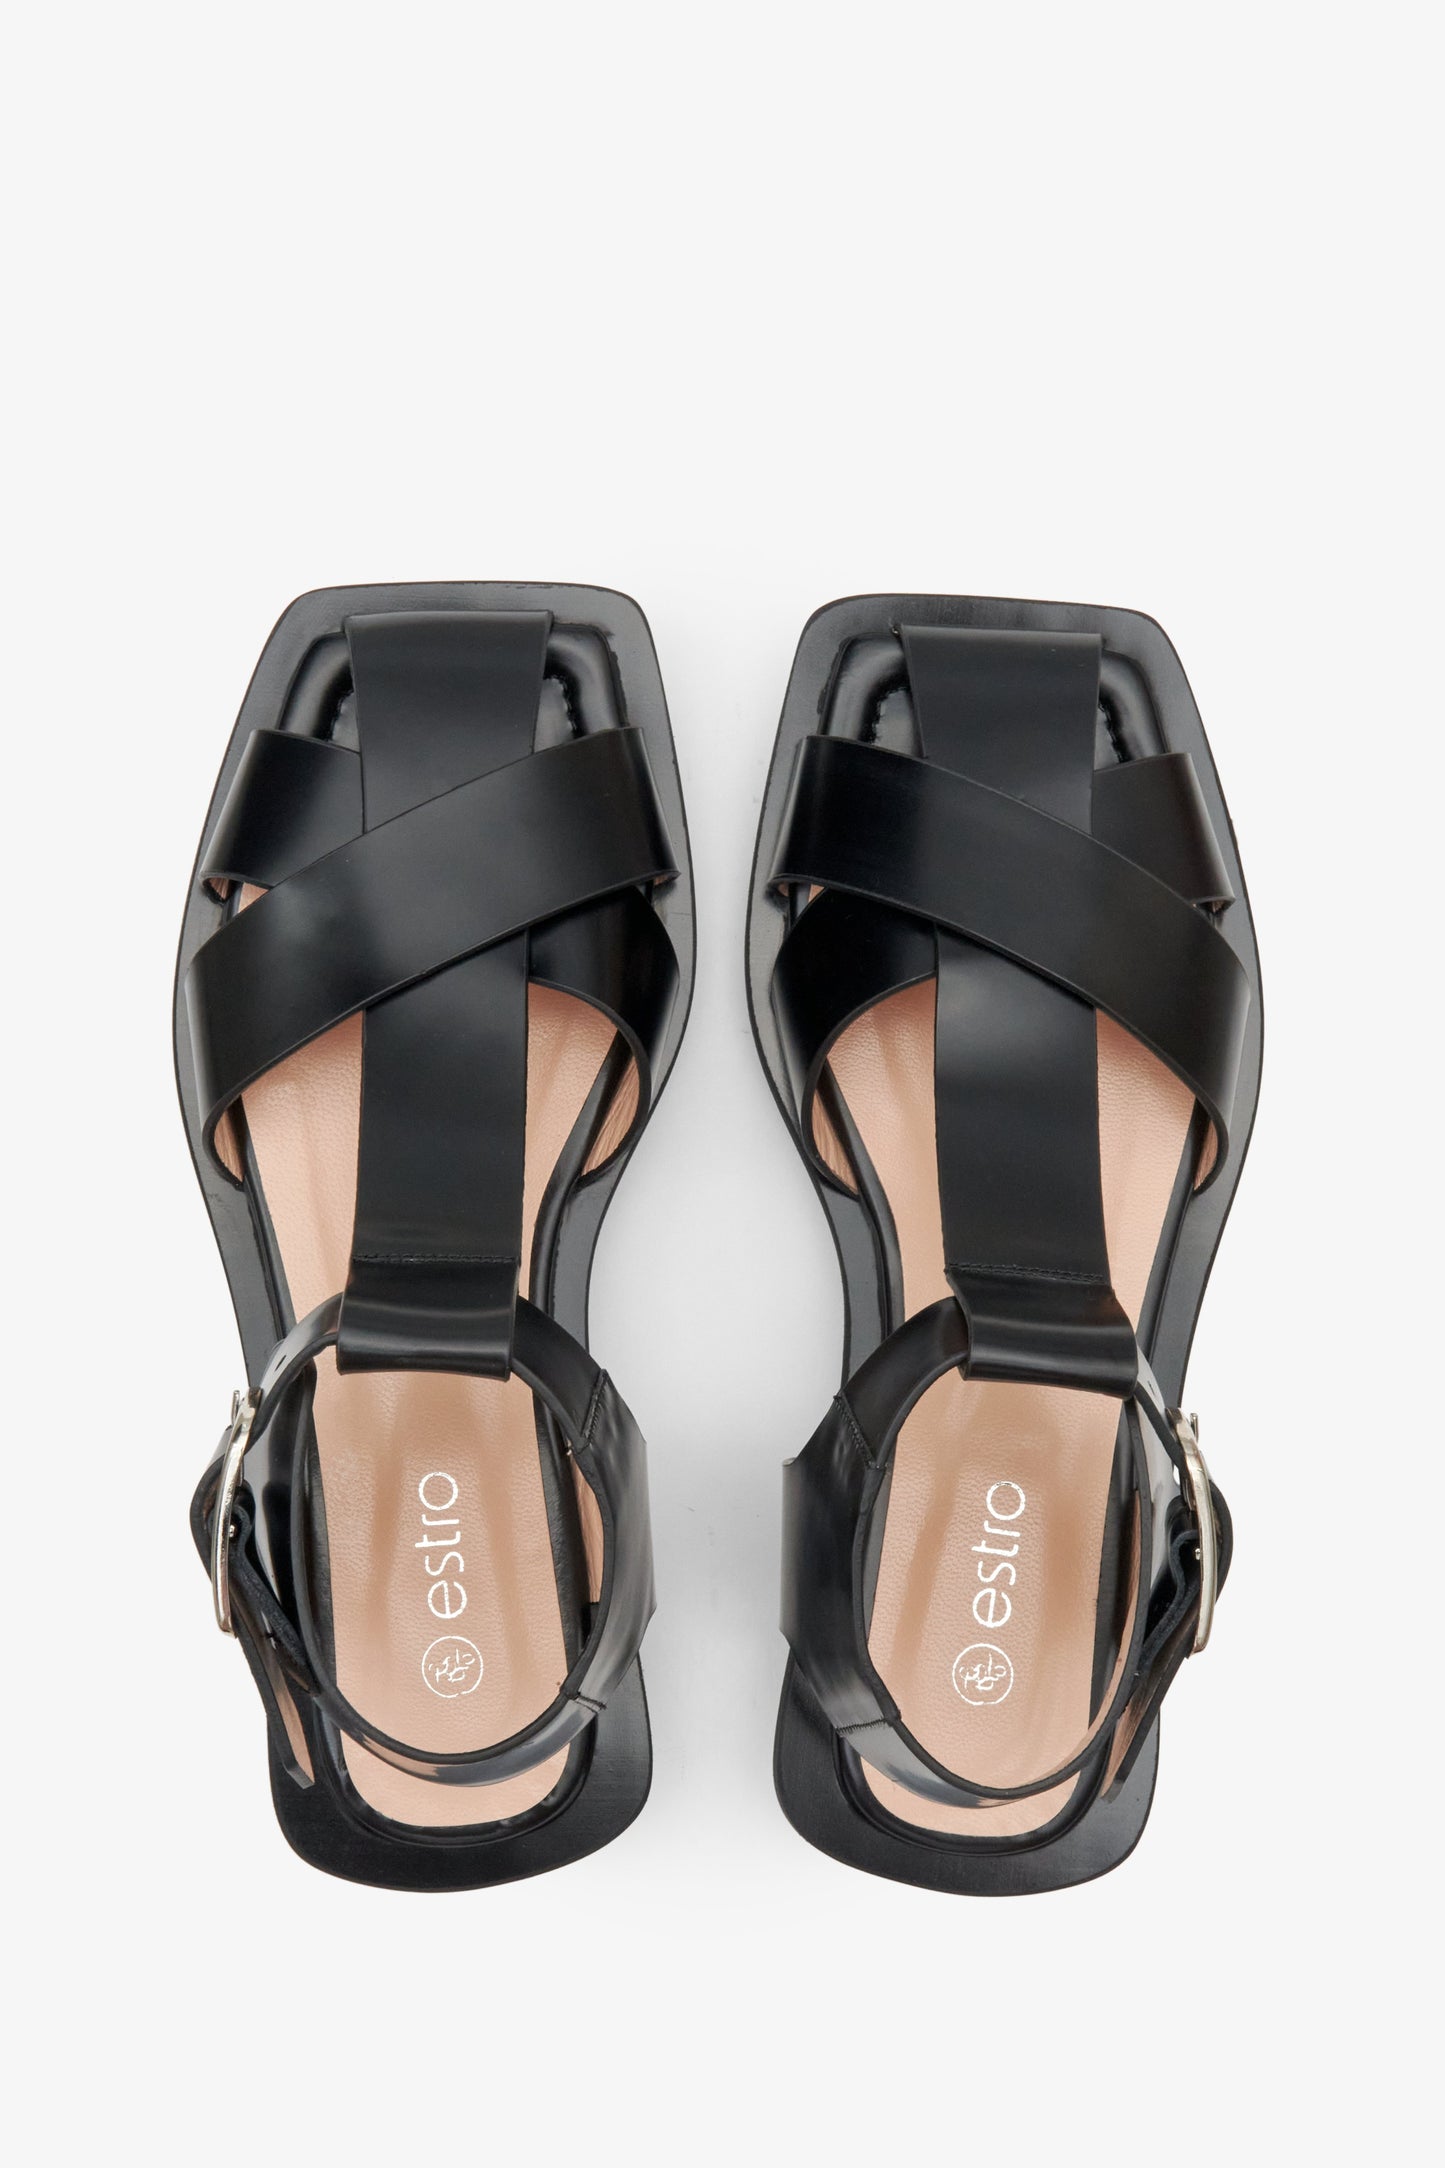 Sandały damskie czarne skórzane na lato Estro - prezentacja obuwia z góry.